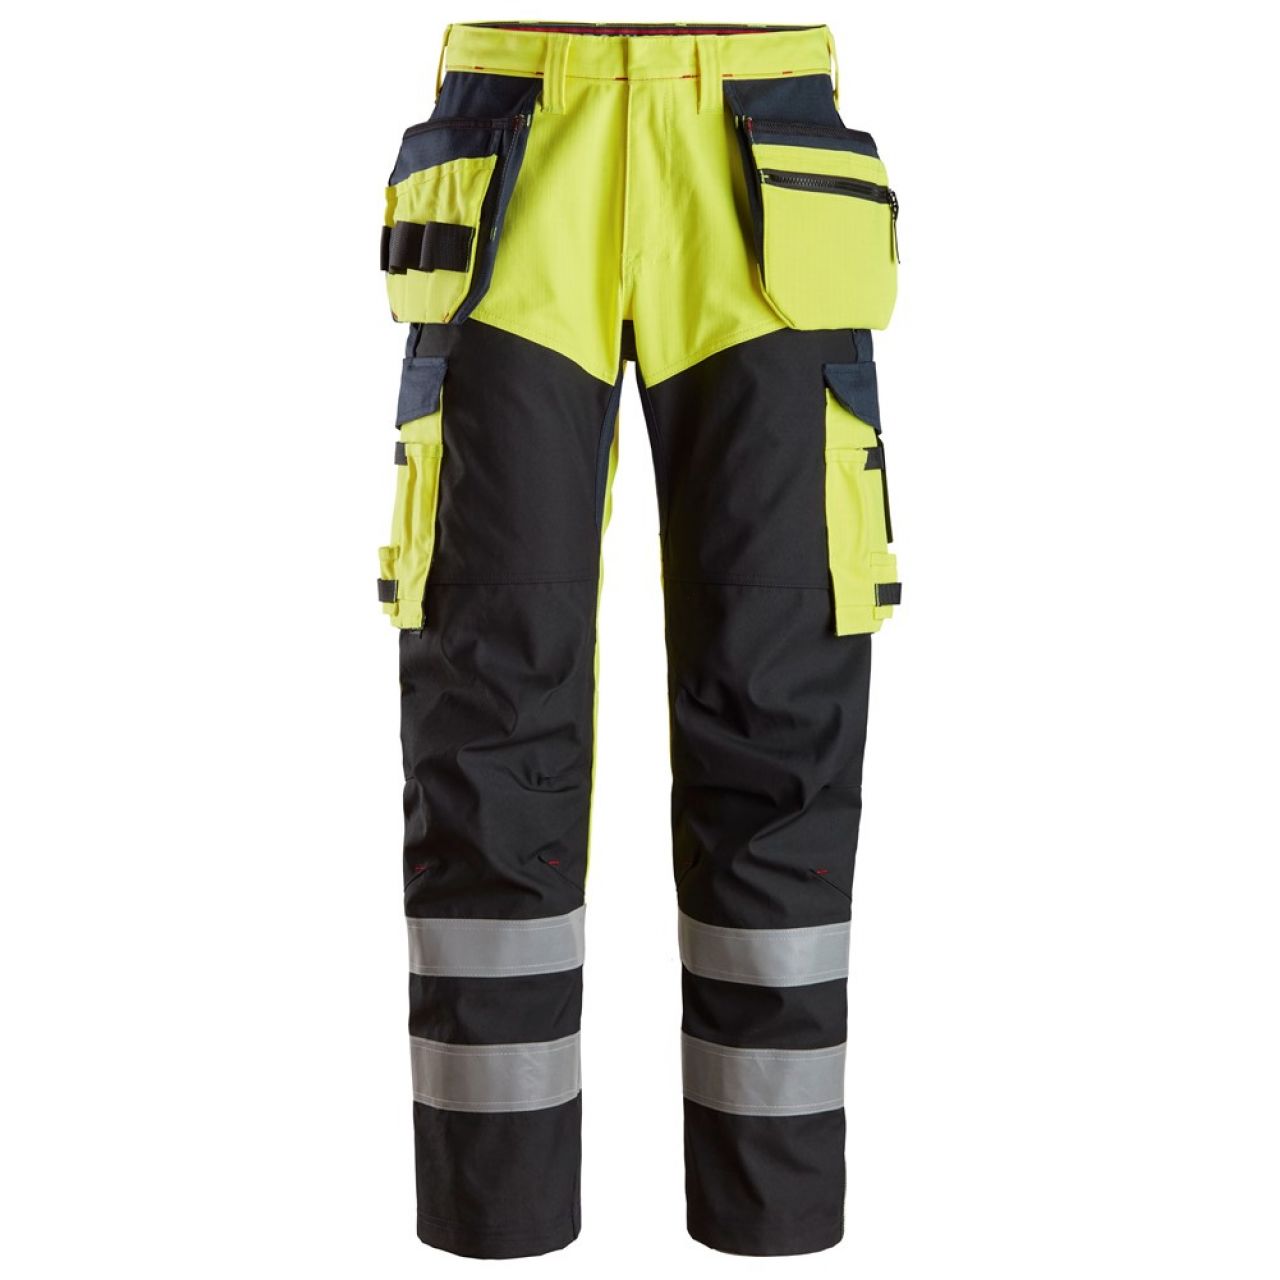 6265 Pantalones largos de trabajo de alta visibilidad clase 1 con bolsillos flotantes y espinilla reforzada ProtecWork amarillo-azul marino talla 64